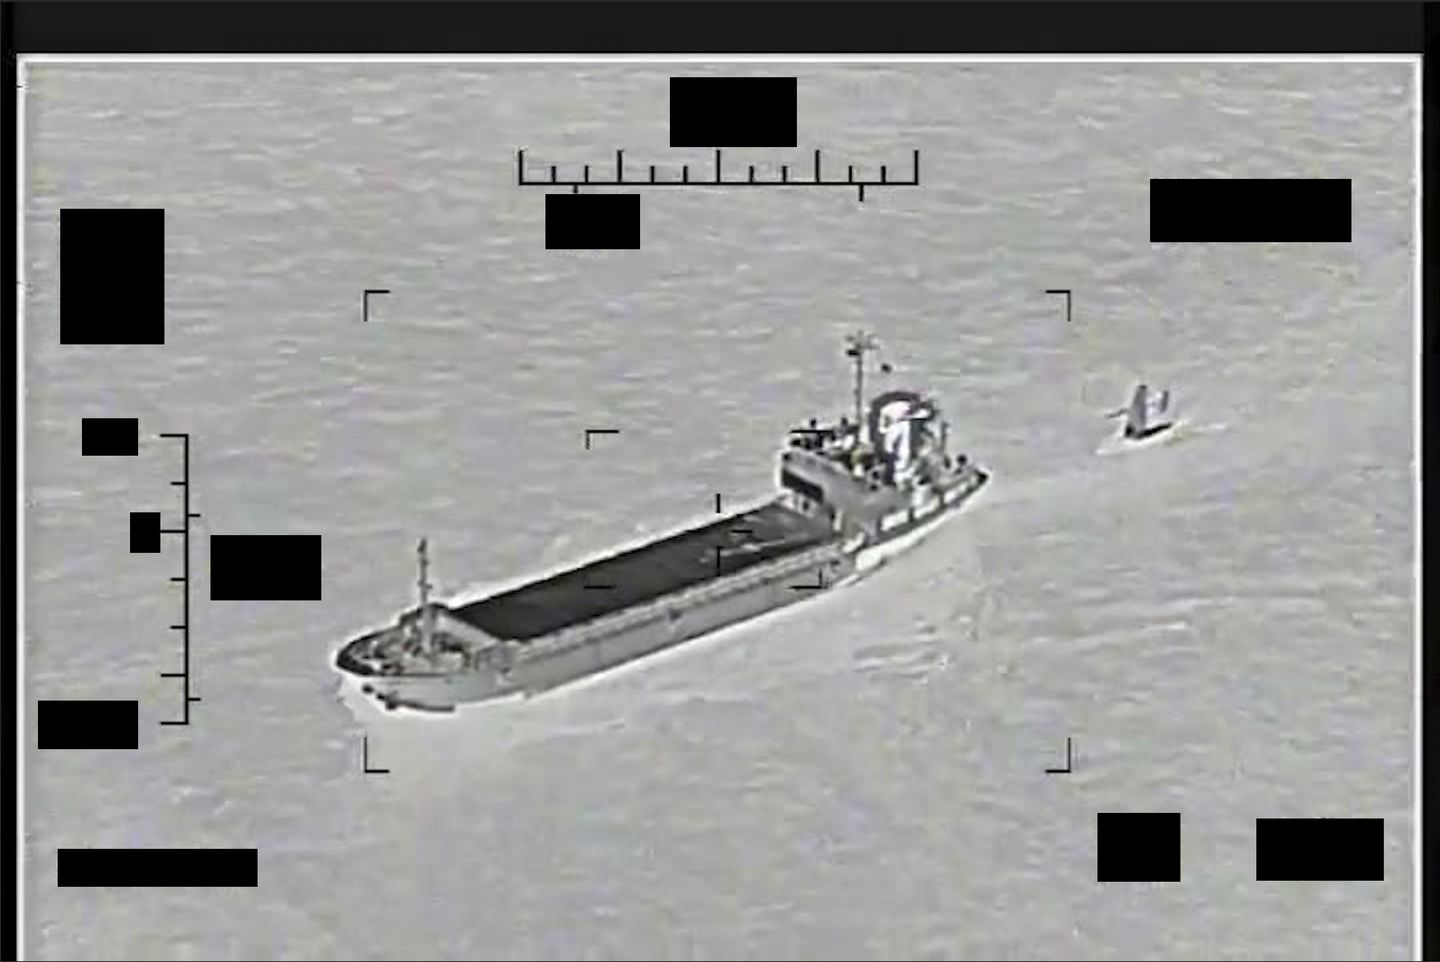 İran, iki ülke arasındaki son çatışmada Basra Körfezi'nde ABD gemisine el koymaya çalıştı, başarısız oldu